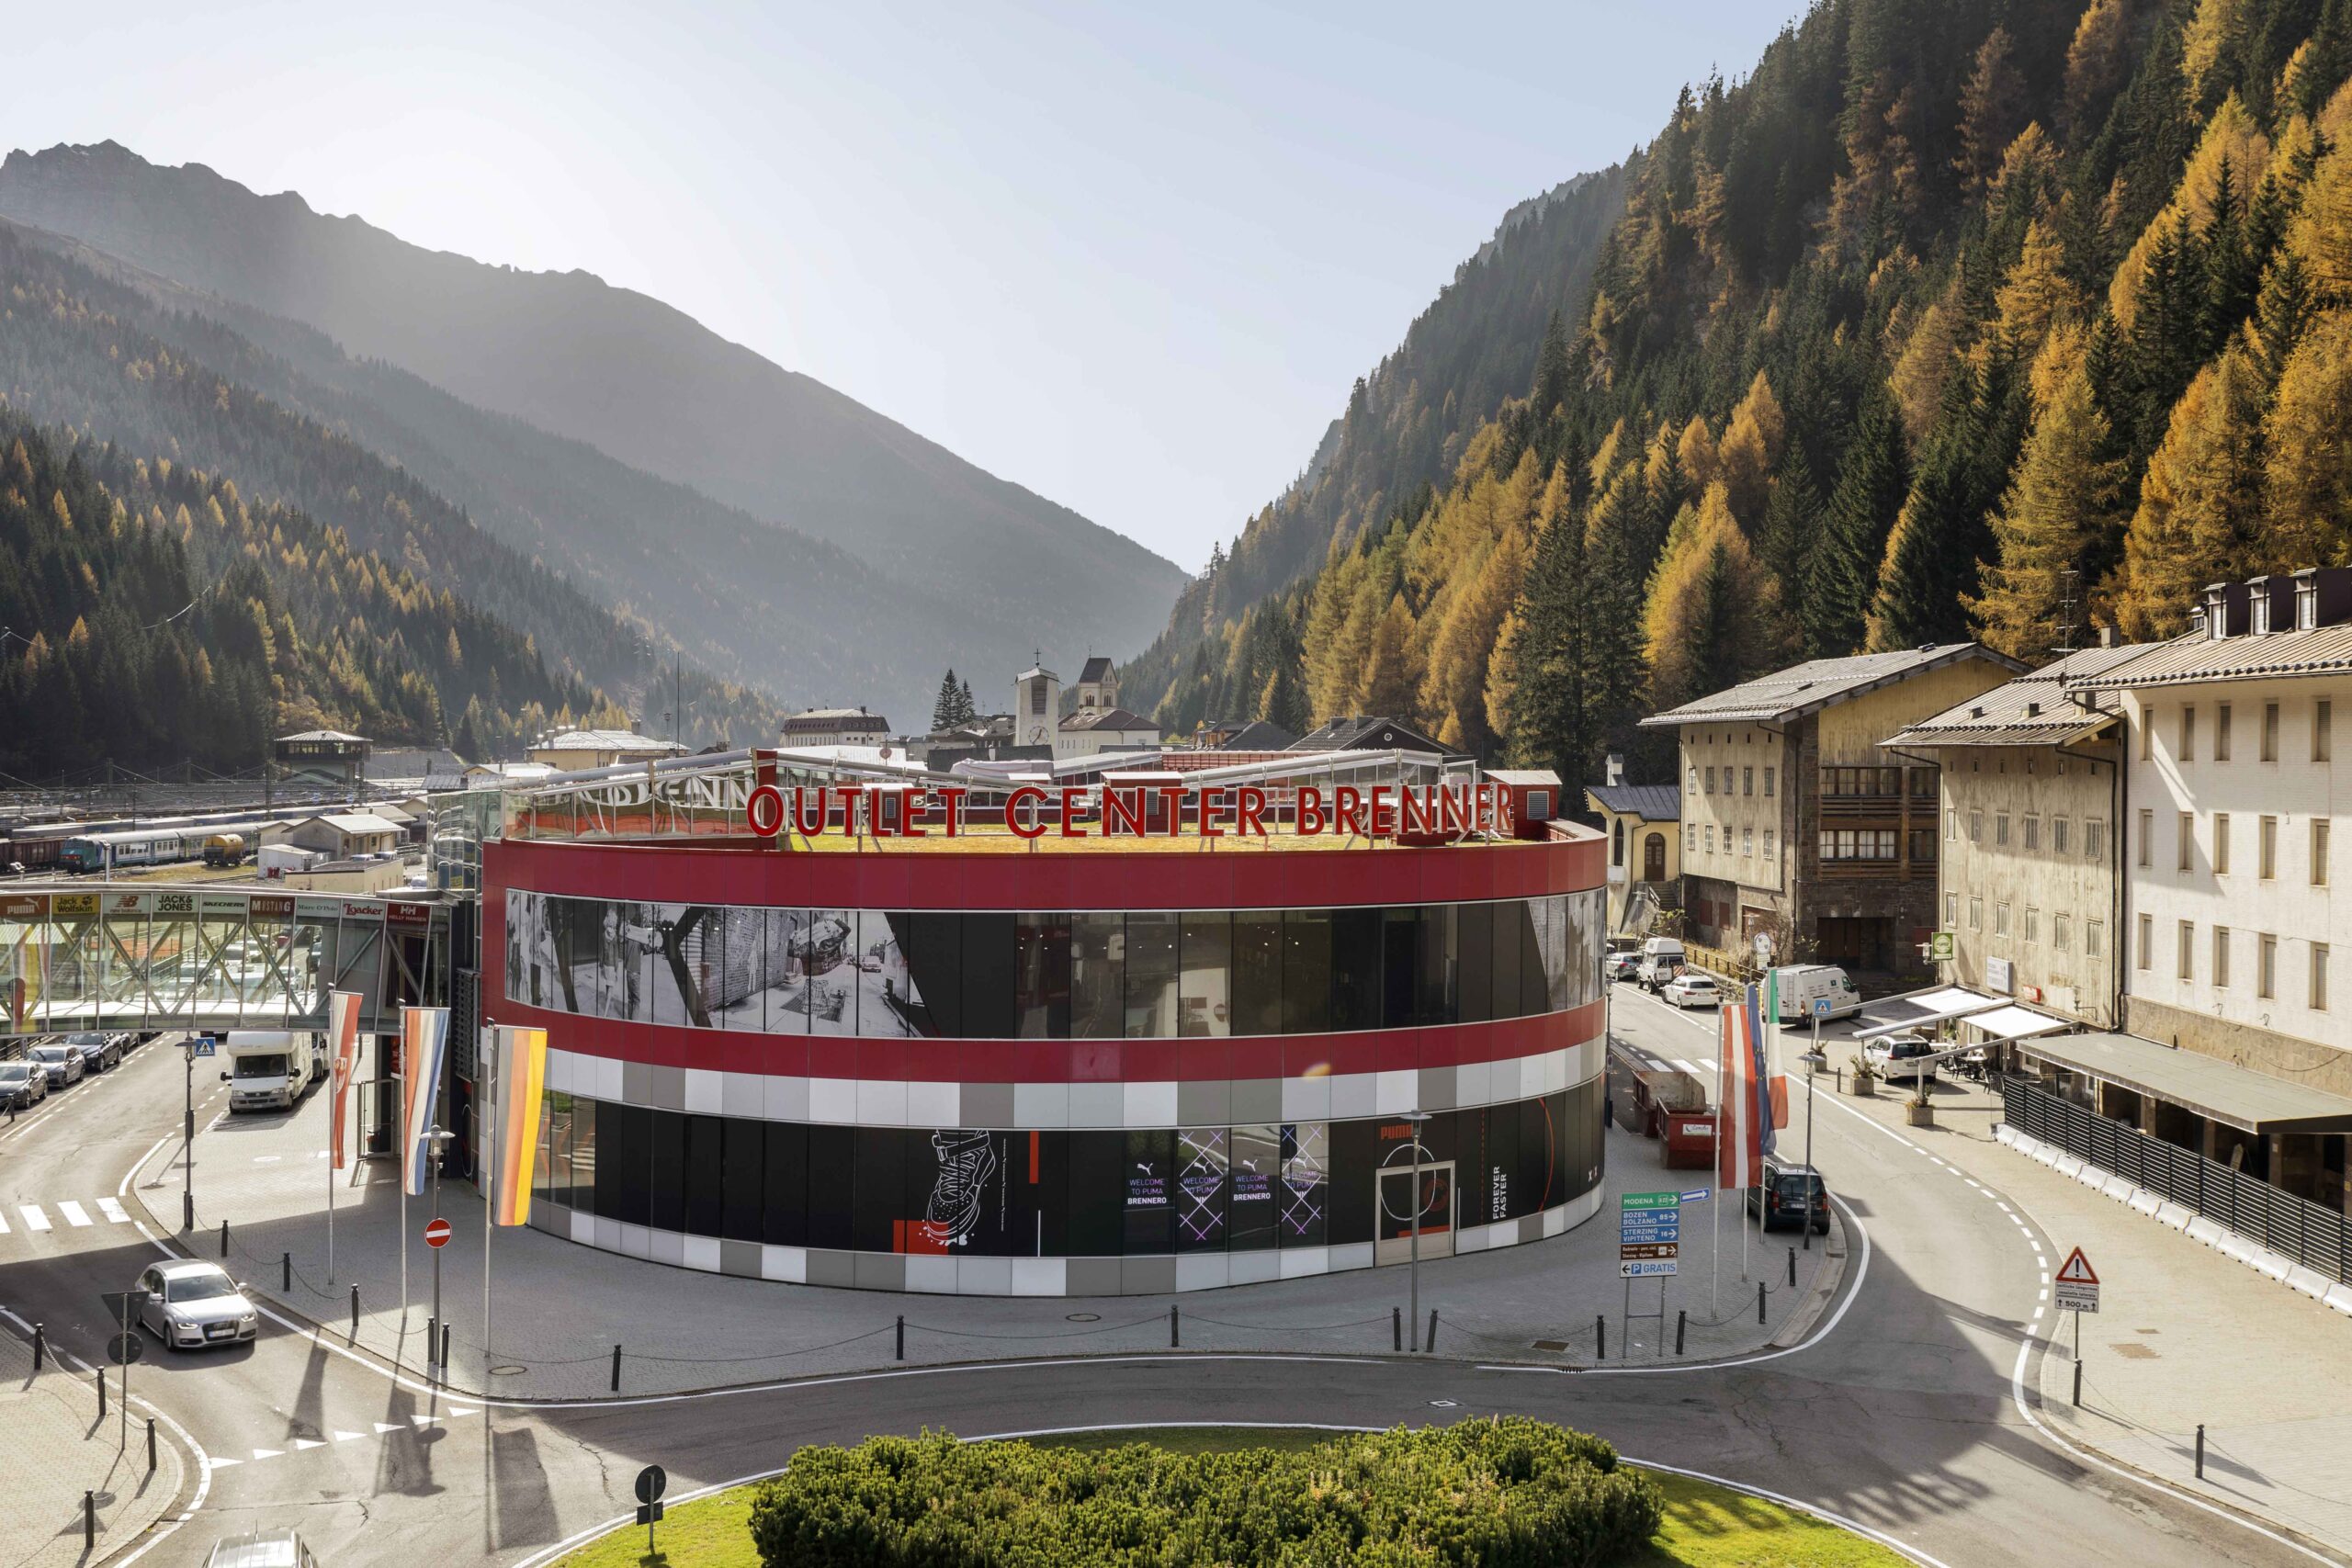 Outlet Center Brenner: 25 Millionen Euro für Neugestaltung - SWZ